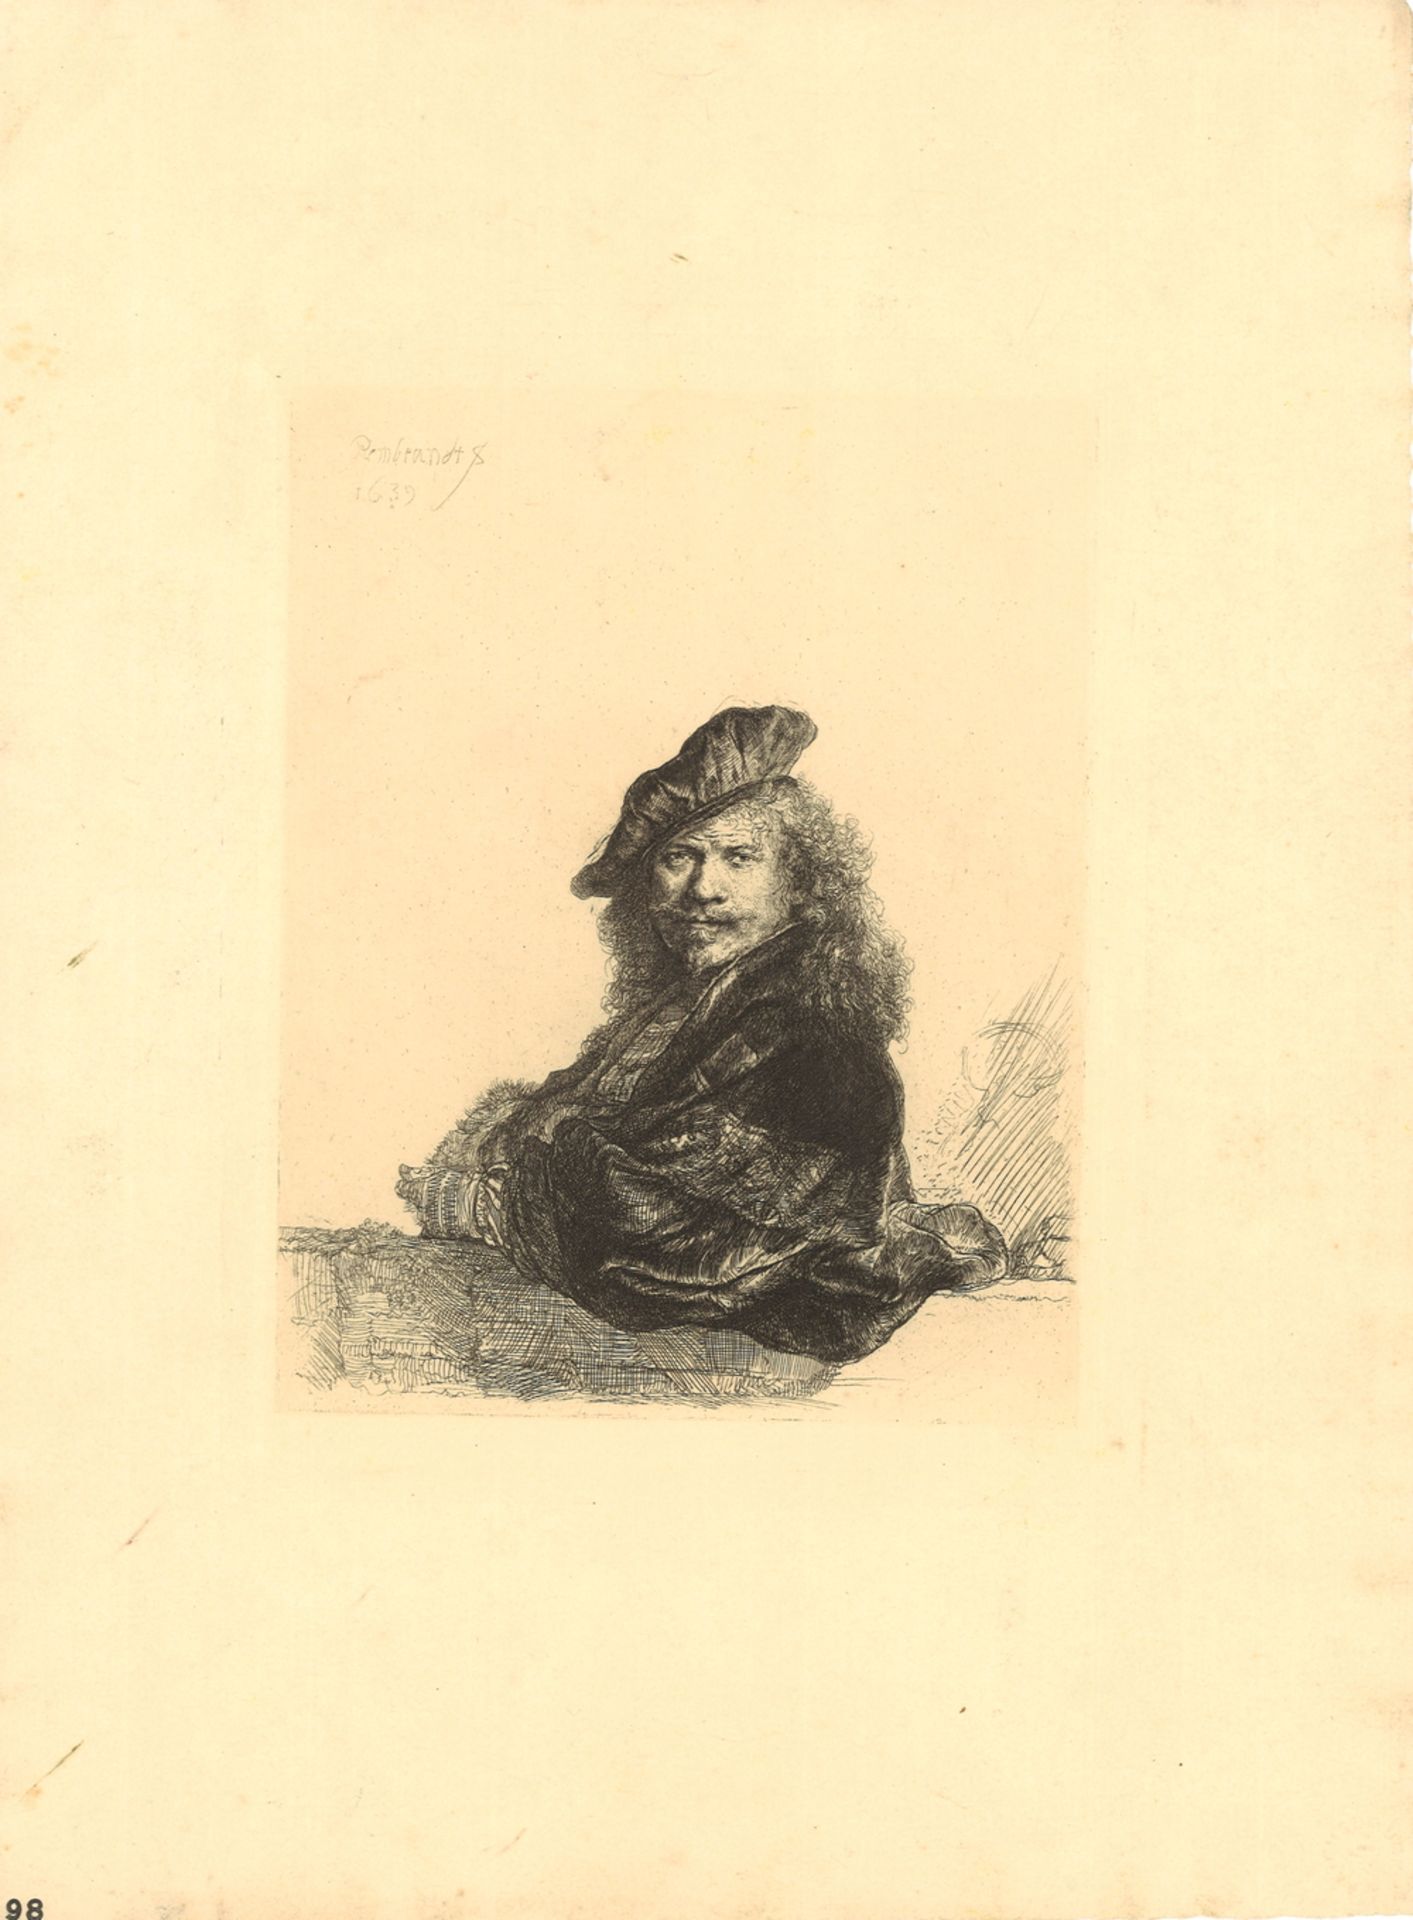 Druckgrafik "Selbstbildnis", 1639, von Rembrandt Harmensz. van Rijn (1606-1669) Stempel auf der